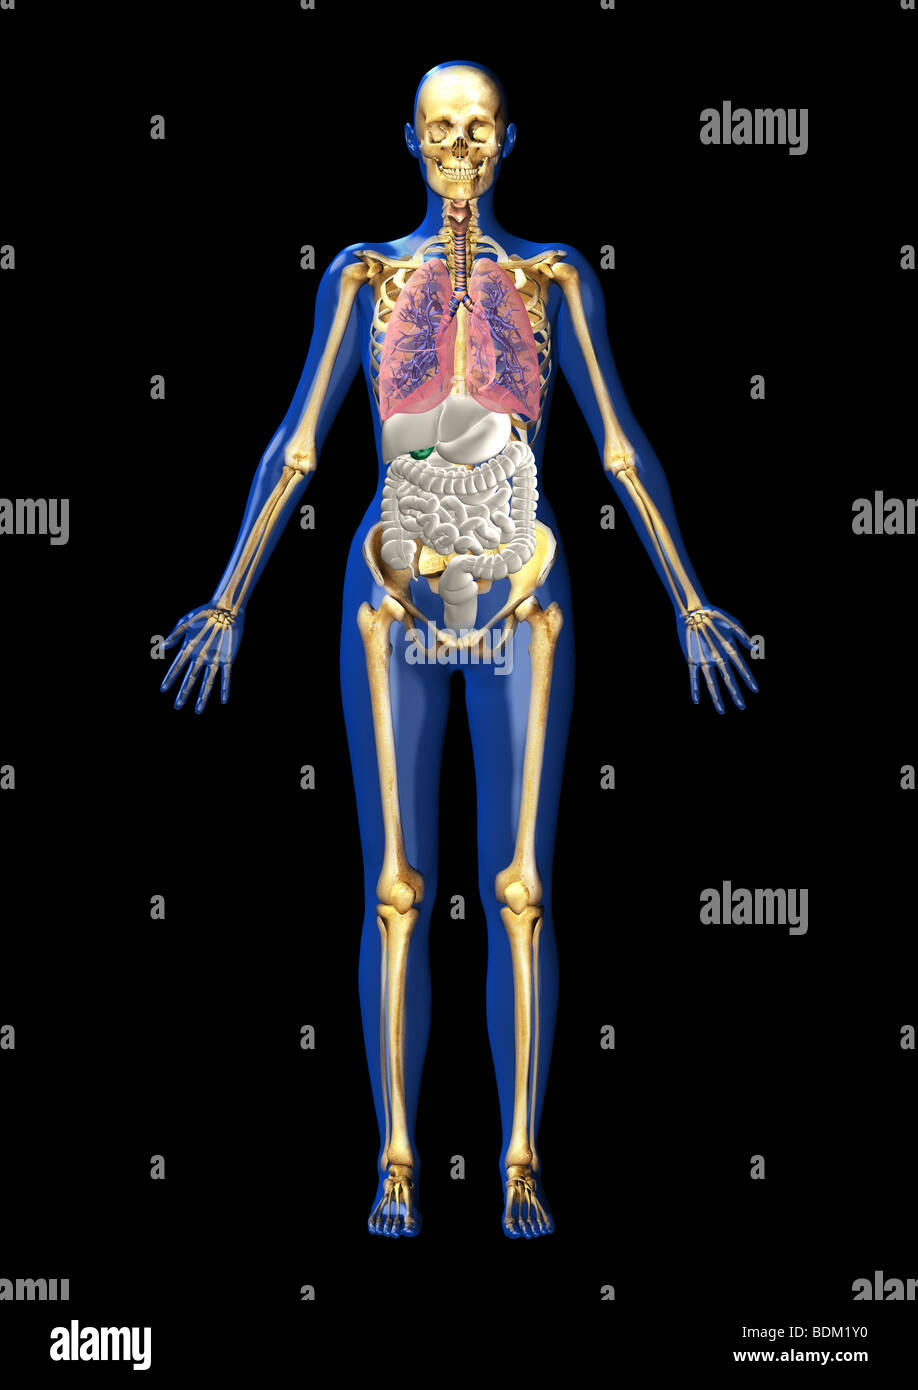 Illustration de l'anatomie humaine Banque D'Images